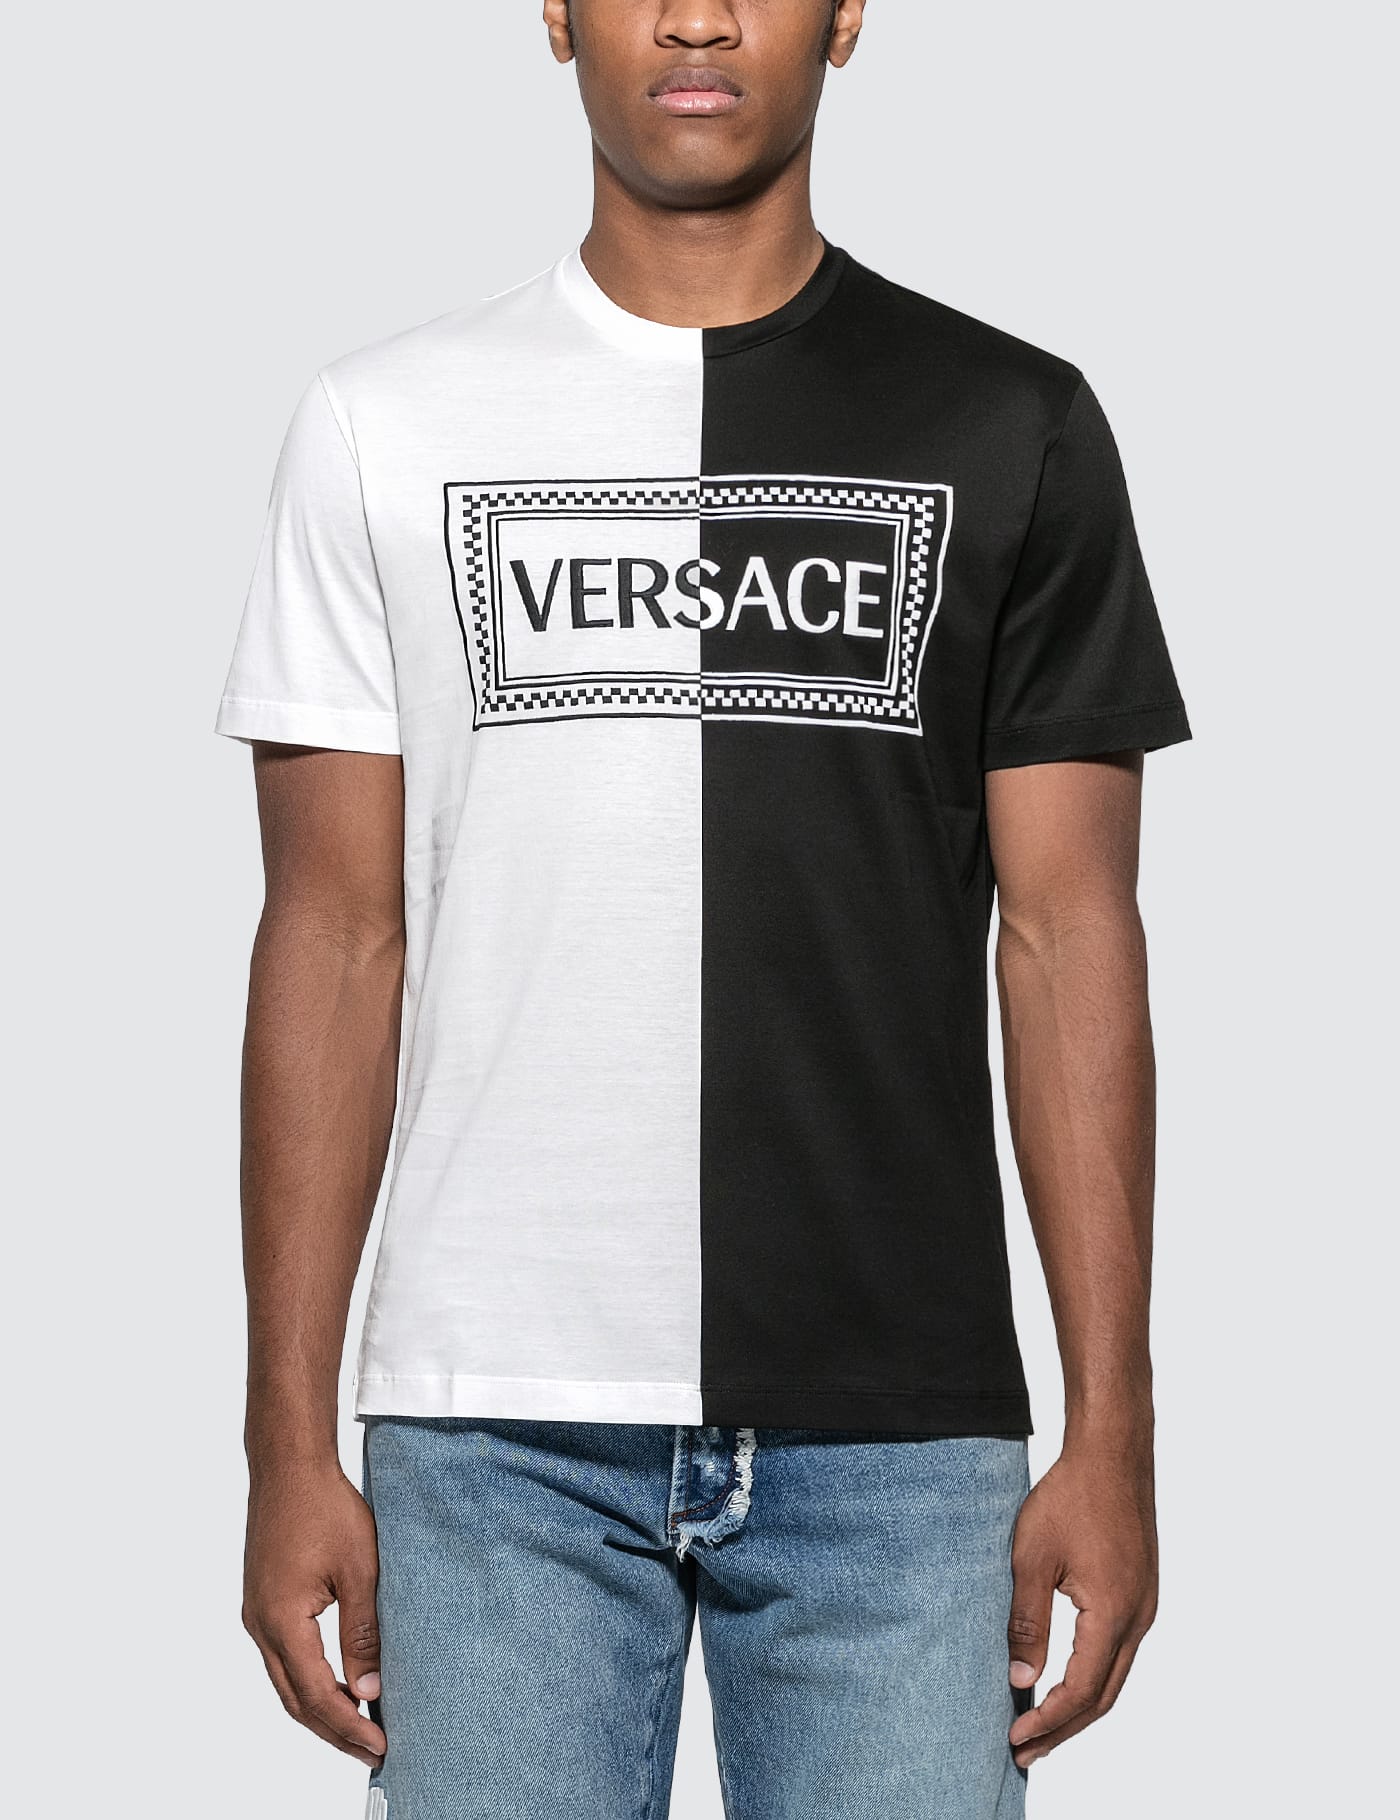 white and black versace shirt